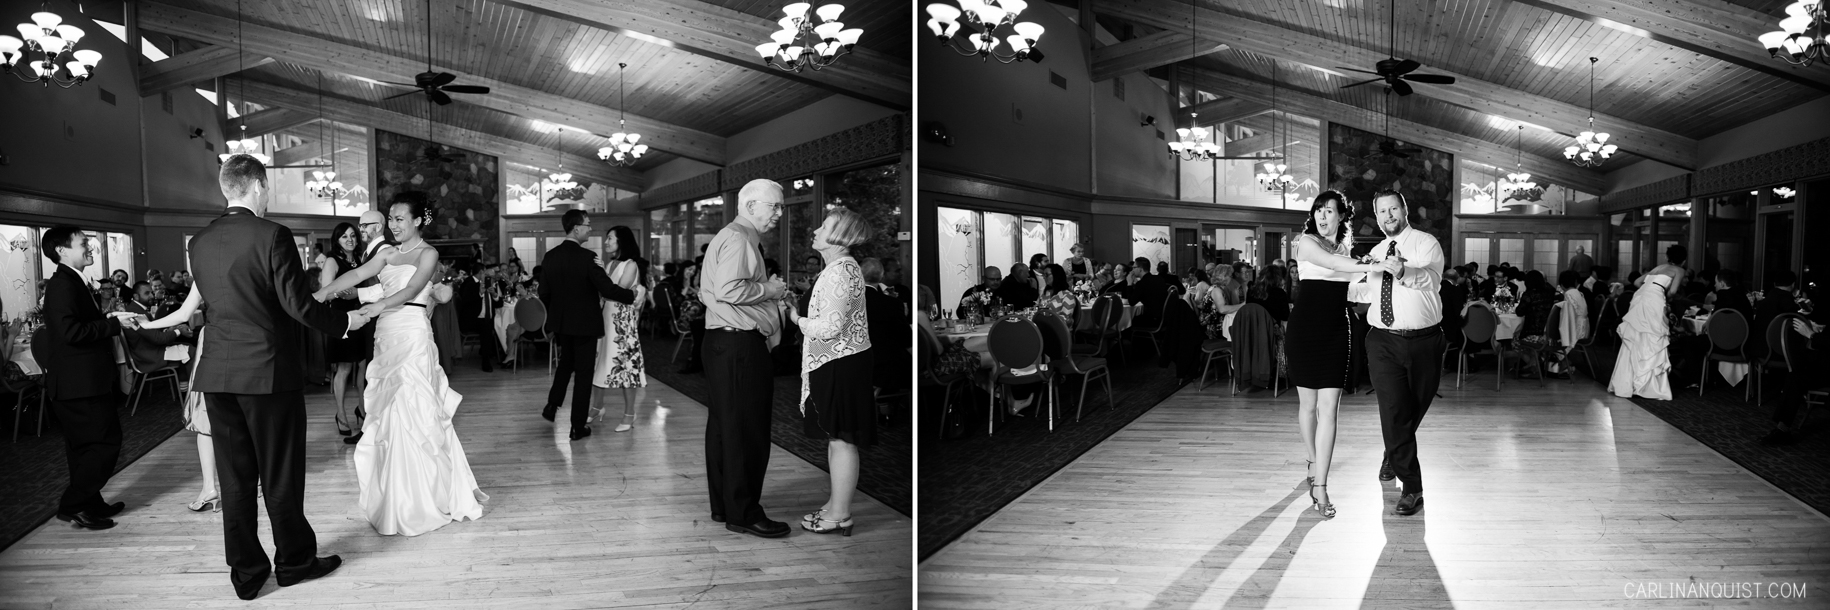 Calgary Reception Venues | Earl Grey Golf Club Wedding Photographer